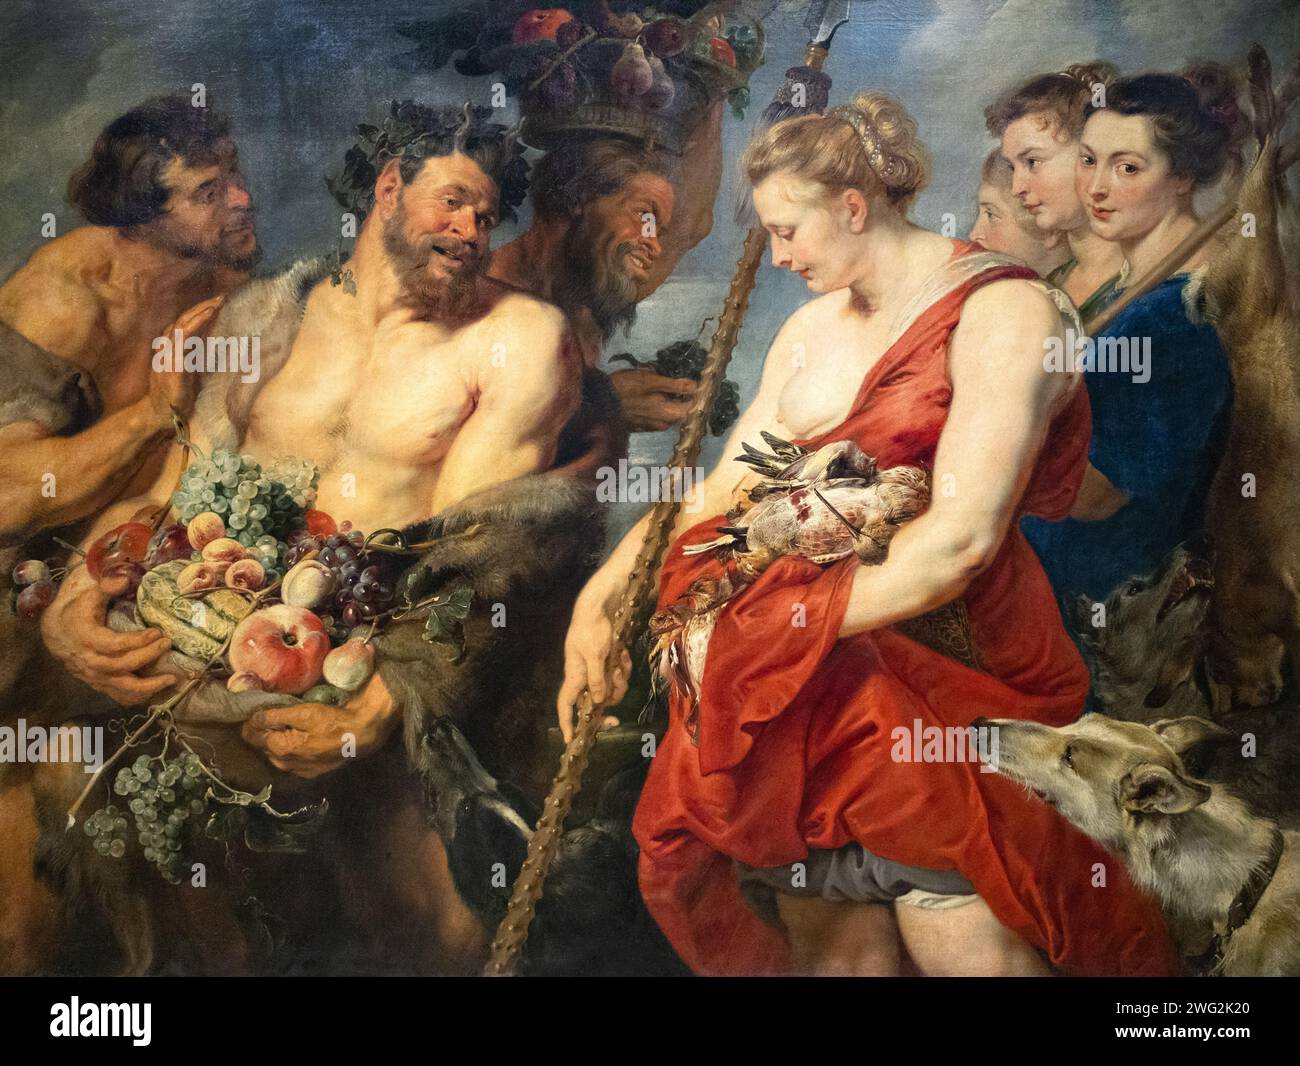 Peter Paul Rubens e Frans Snyders dipingono, "Diana Returning from the Hunt", c.1623, olio su tela; pittura storica di una scena mitologica. Foto Stock